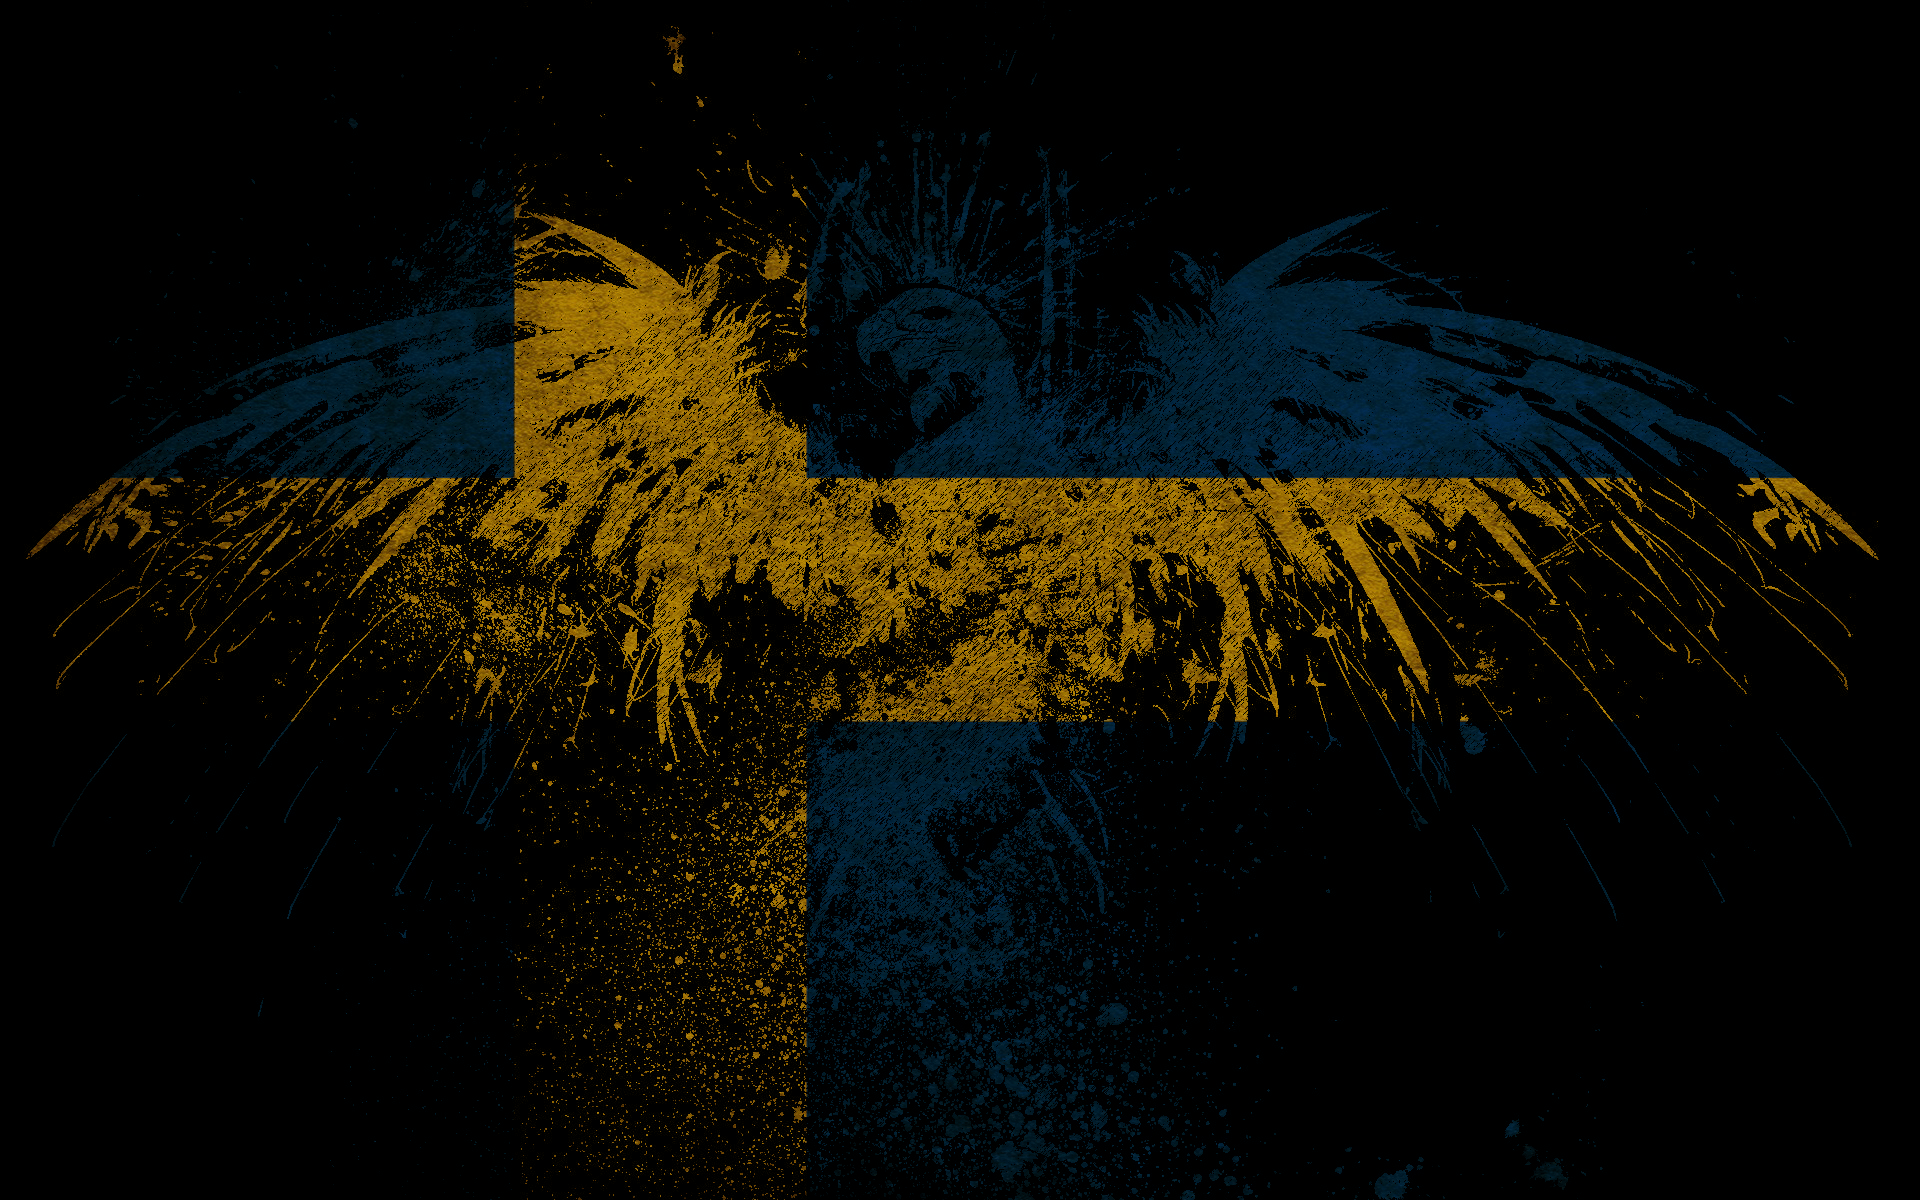 پرچم سوئد (Sweden Flag)